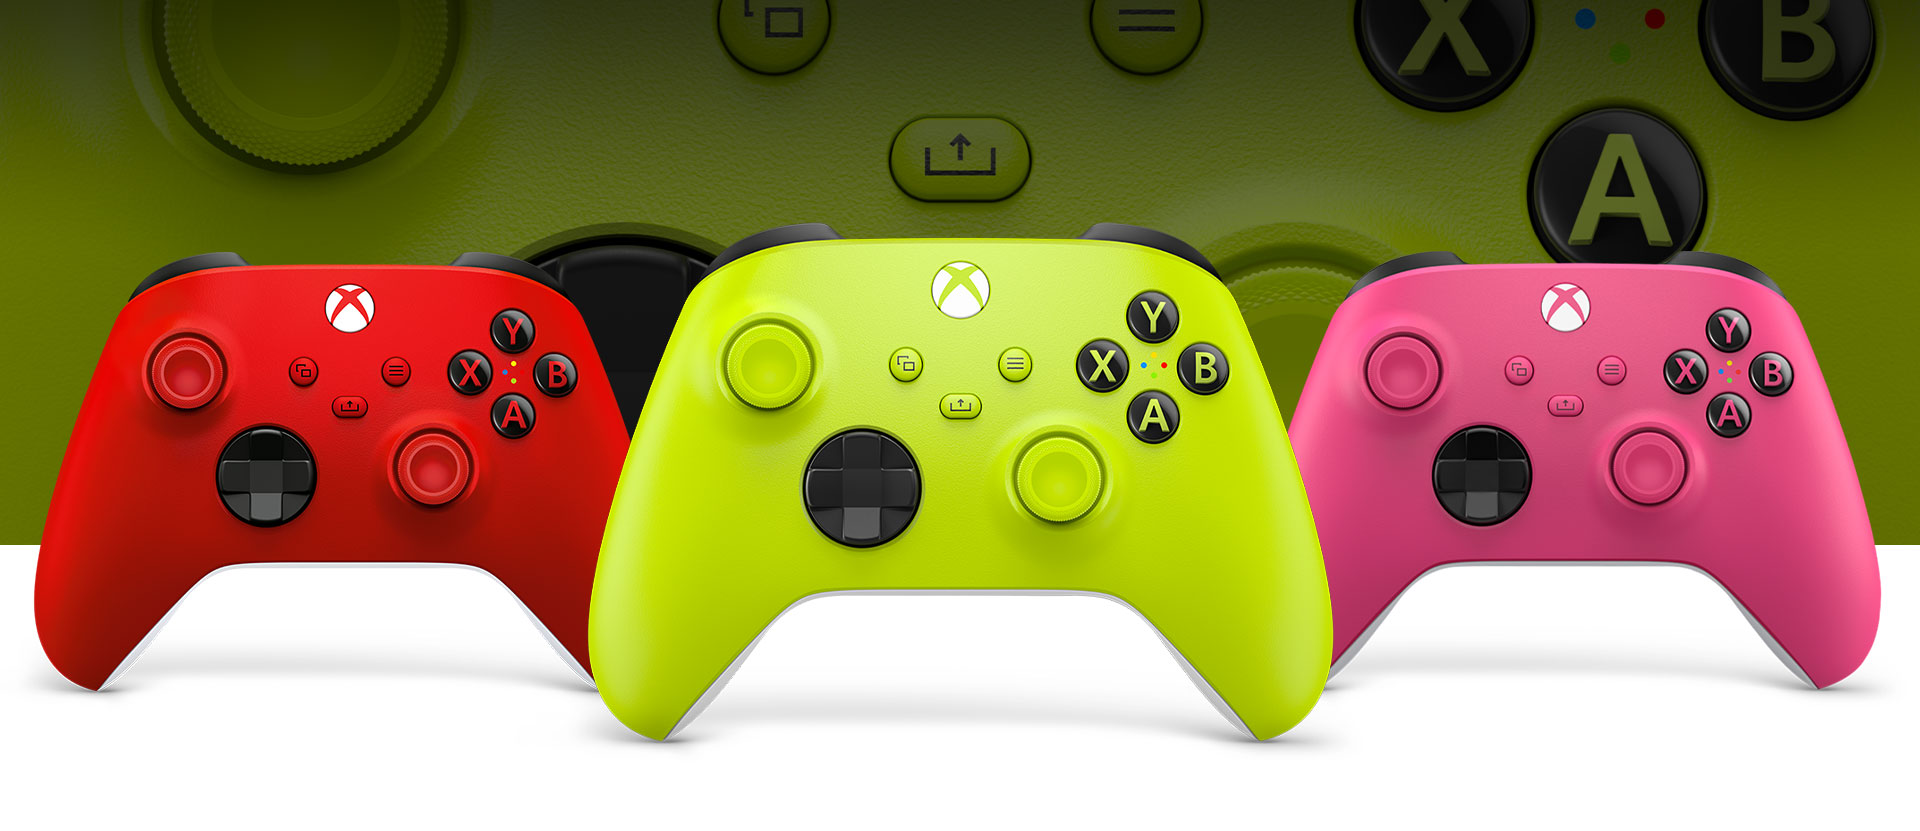 Μπροστινή όψη του ασύρματου χειριστηρίου Xbox σε ανοιχτό πράσινο, με έντονο κόκκινο στα αριστερά και ροζ στα δεξιά